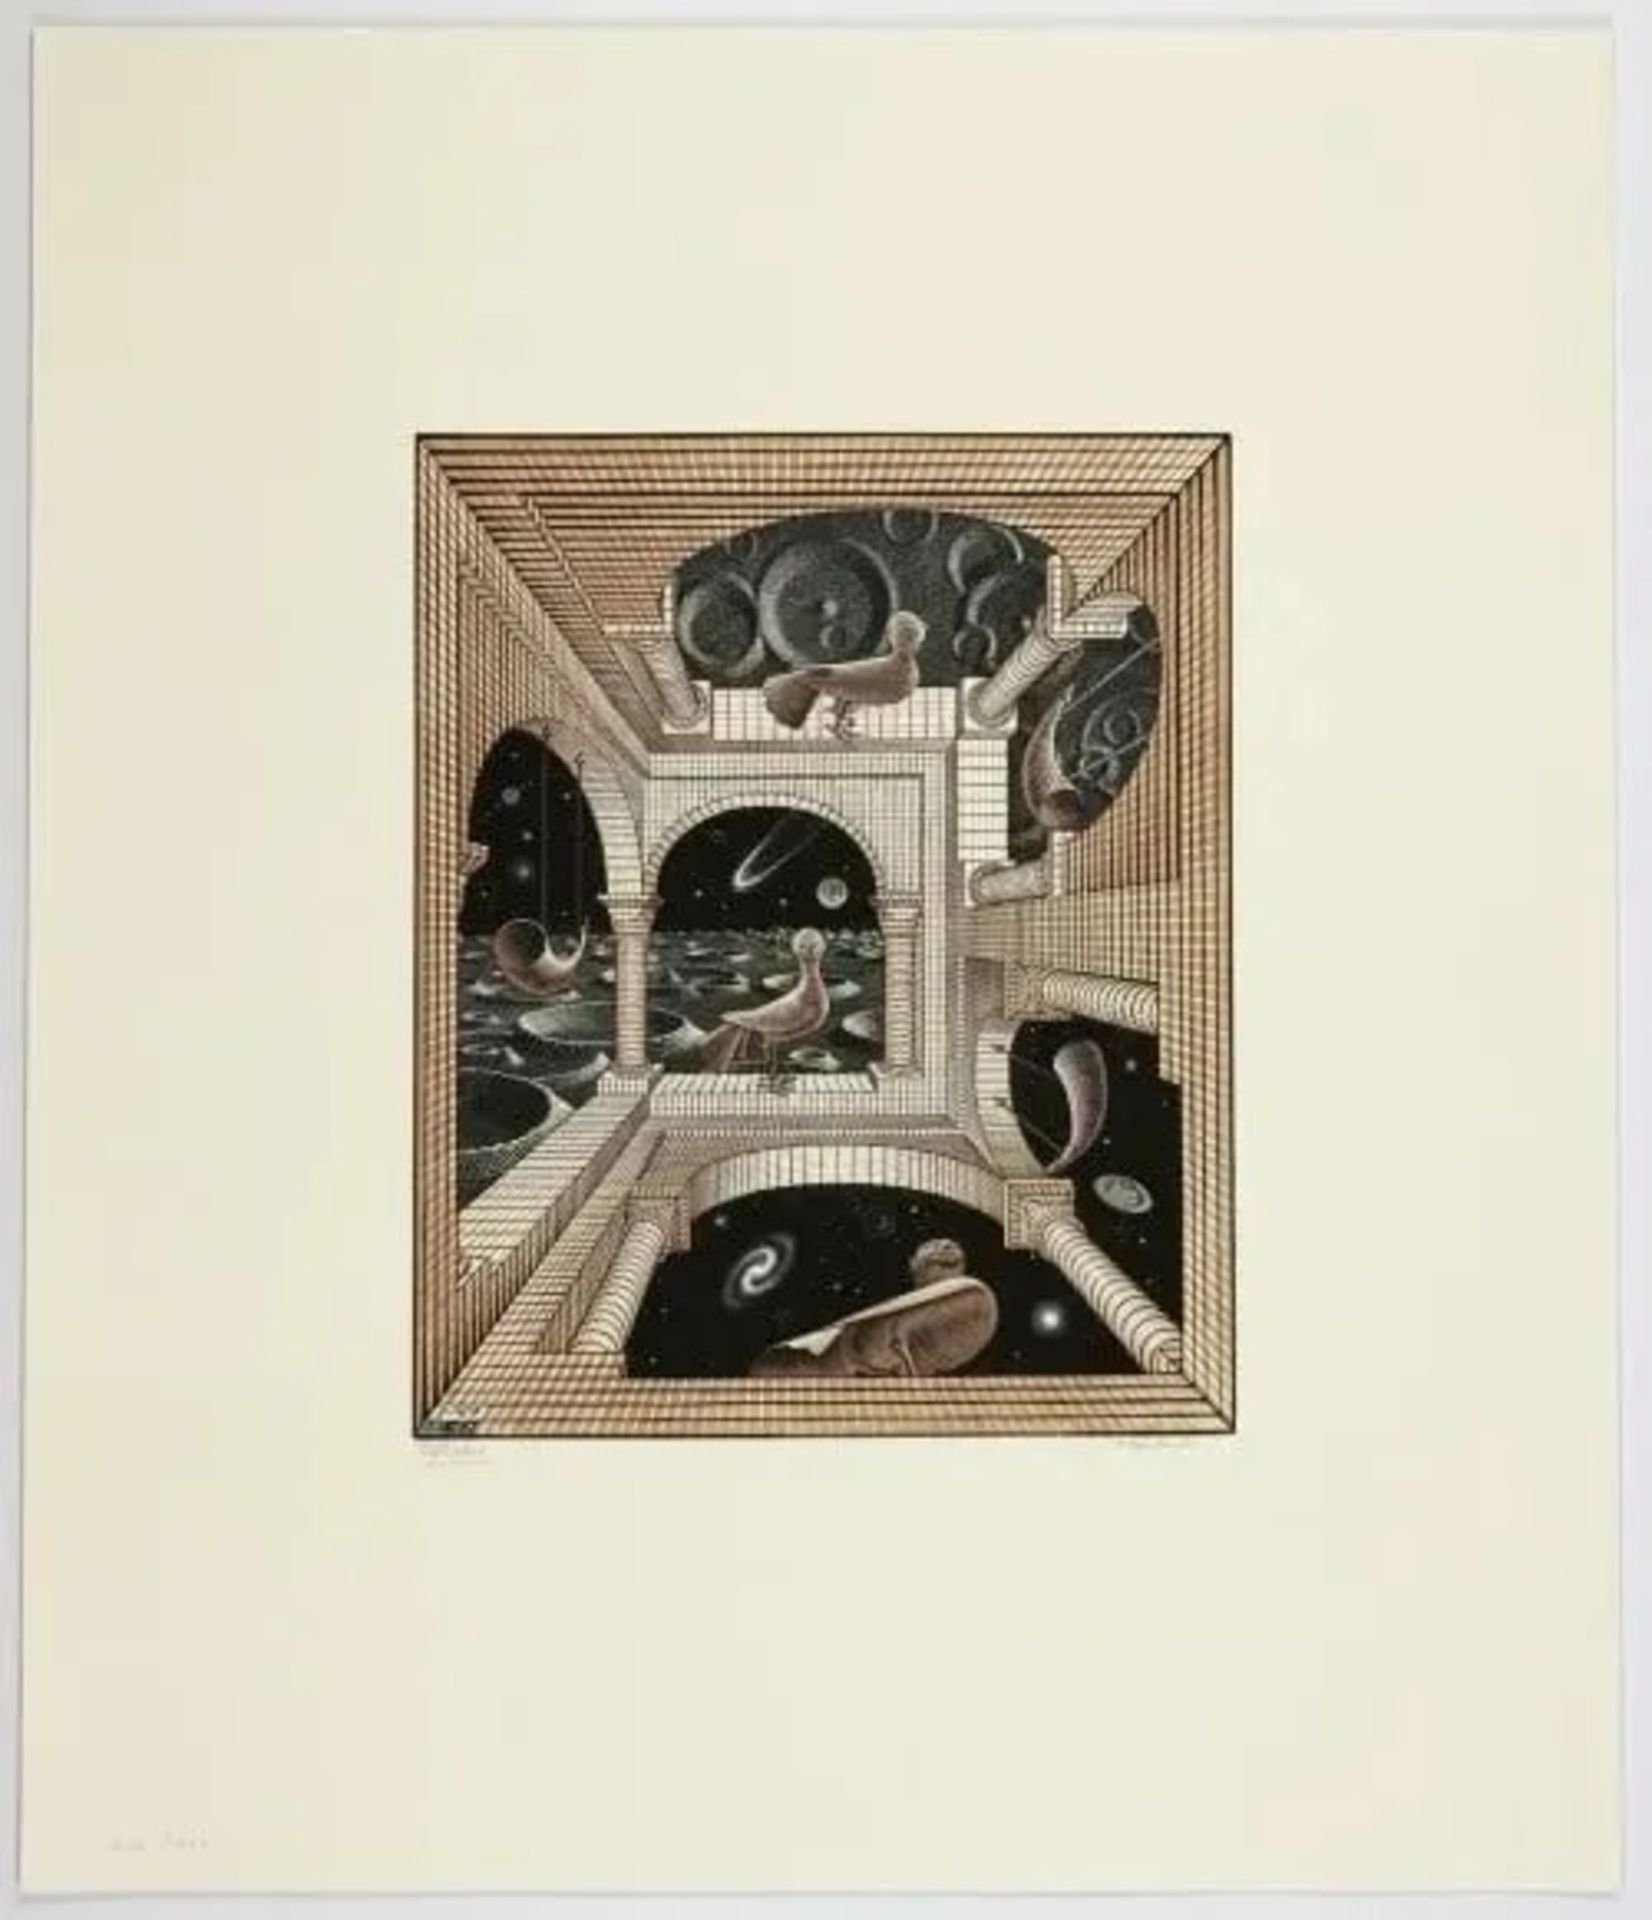 M.C. Escher "Other World" Etching